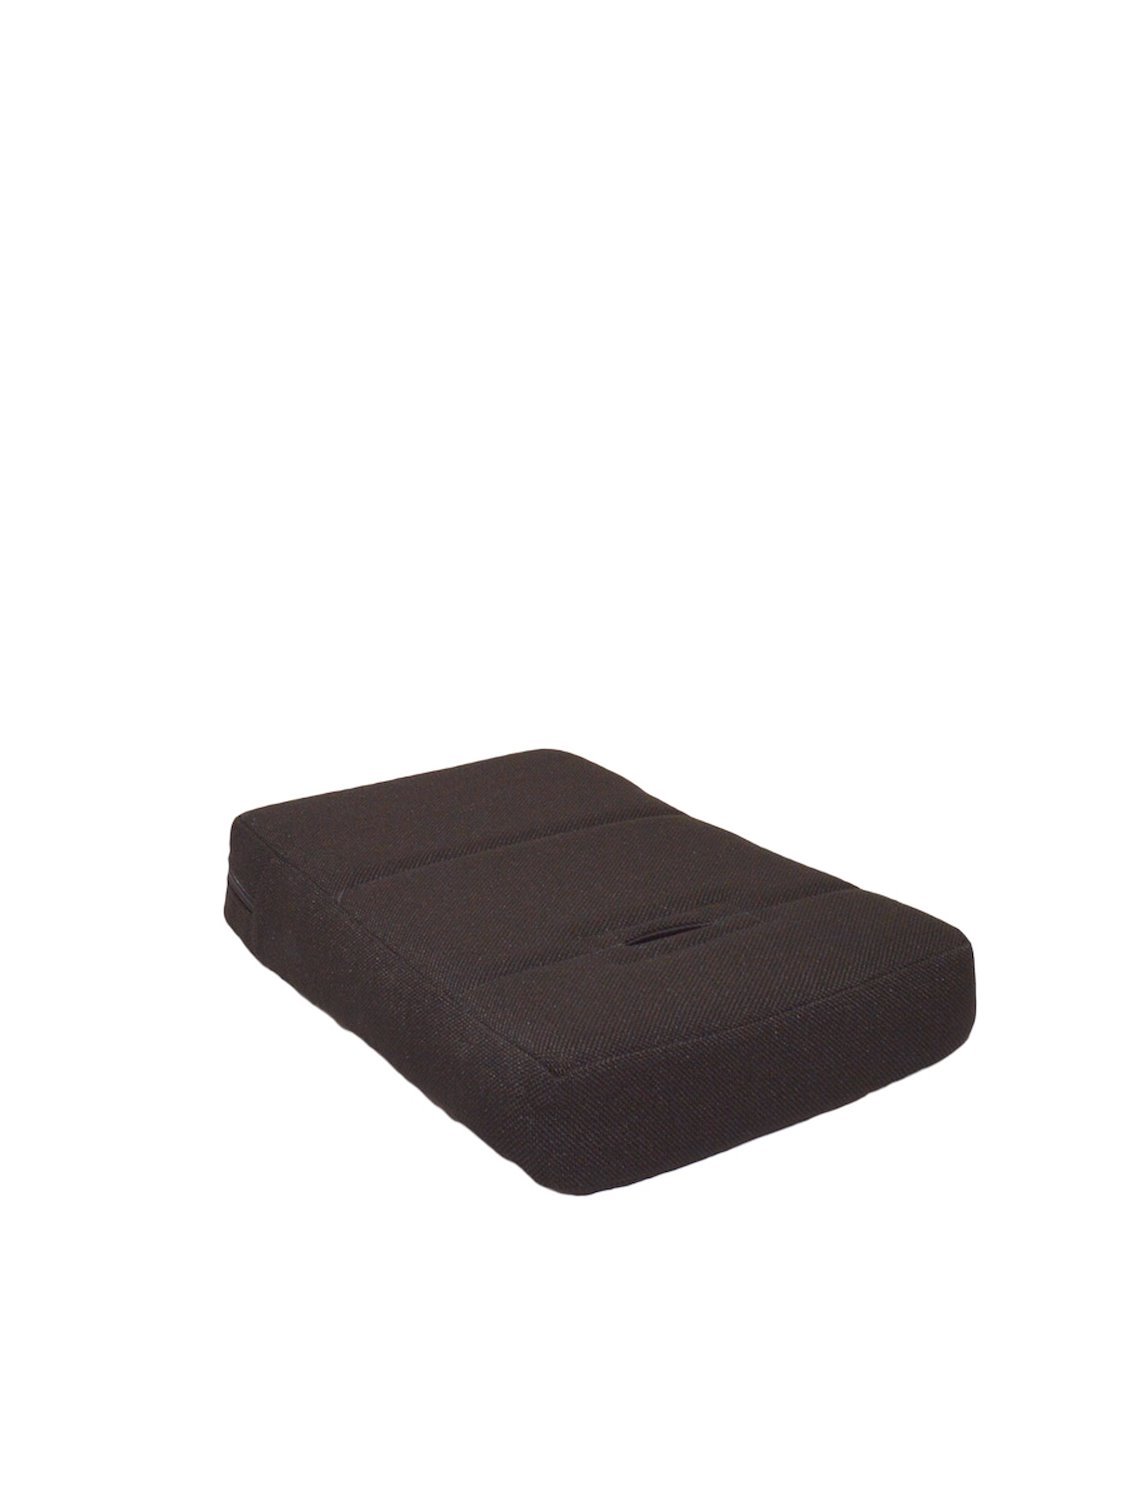 H65 UTV Booster Cushion [Bottom Only]